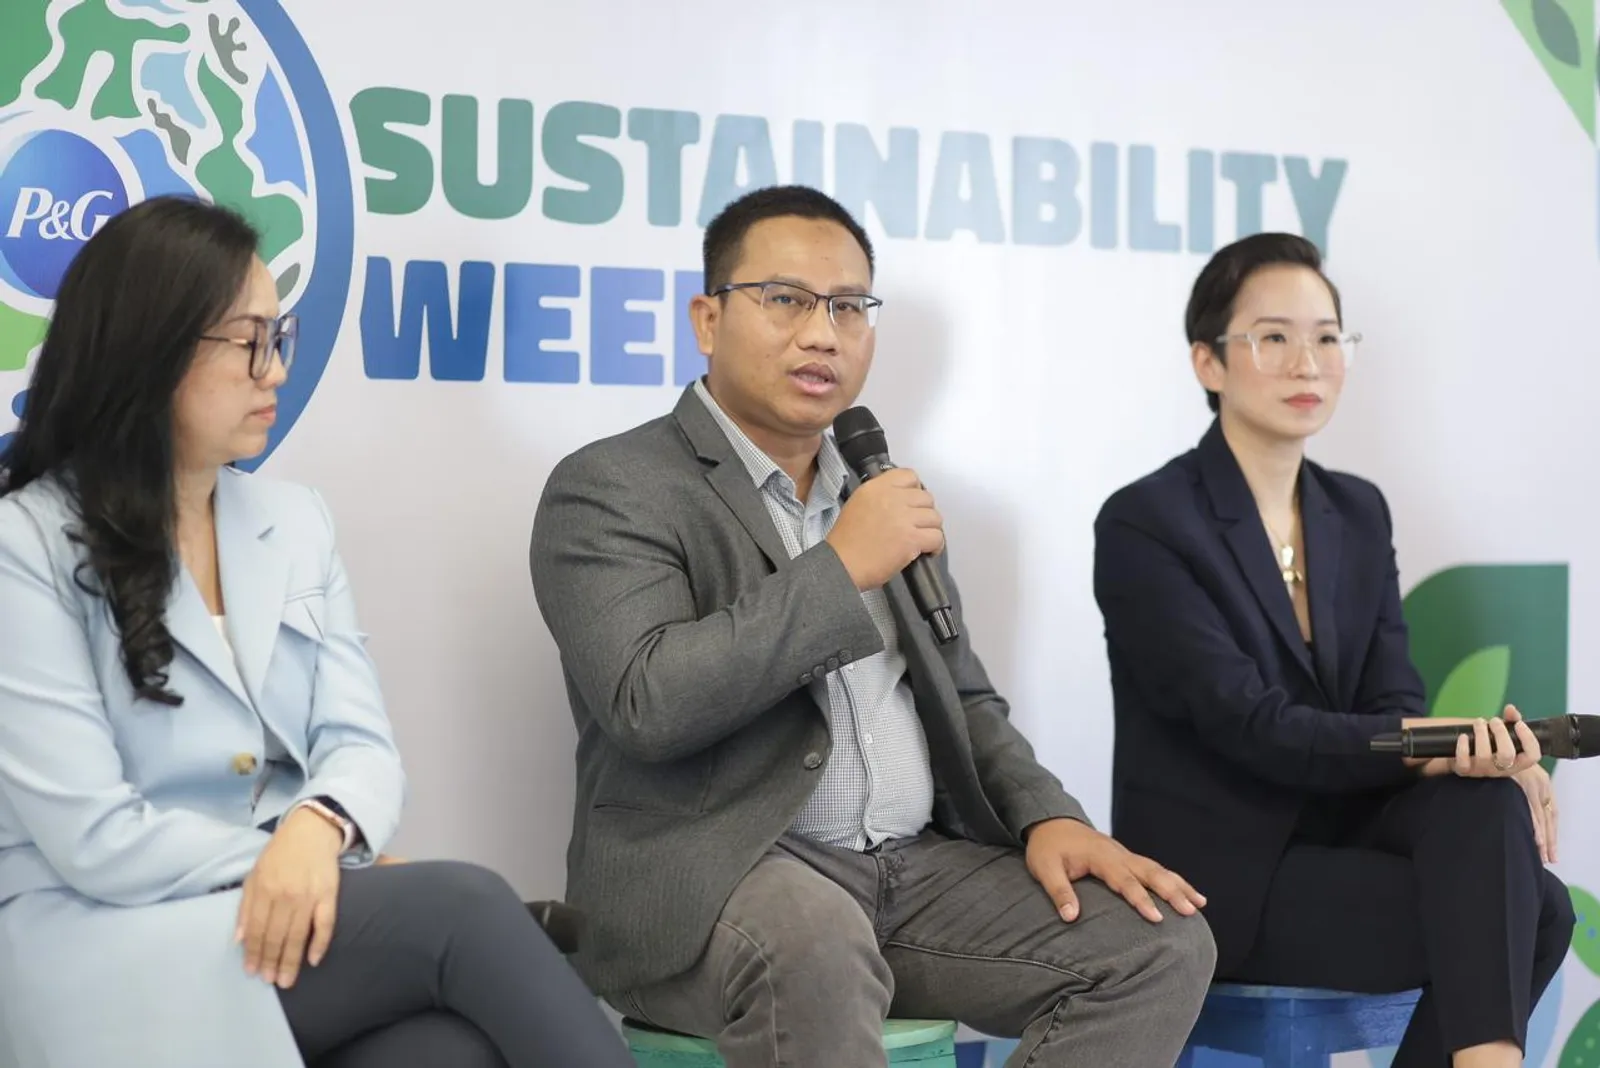 Upaya P&G Indonesia Ciptakan Inovasi Berdampak Positif bagi Lingkungan